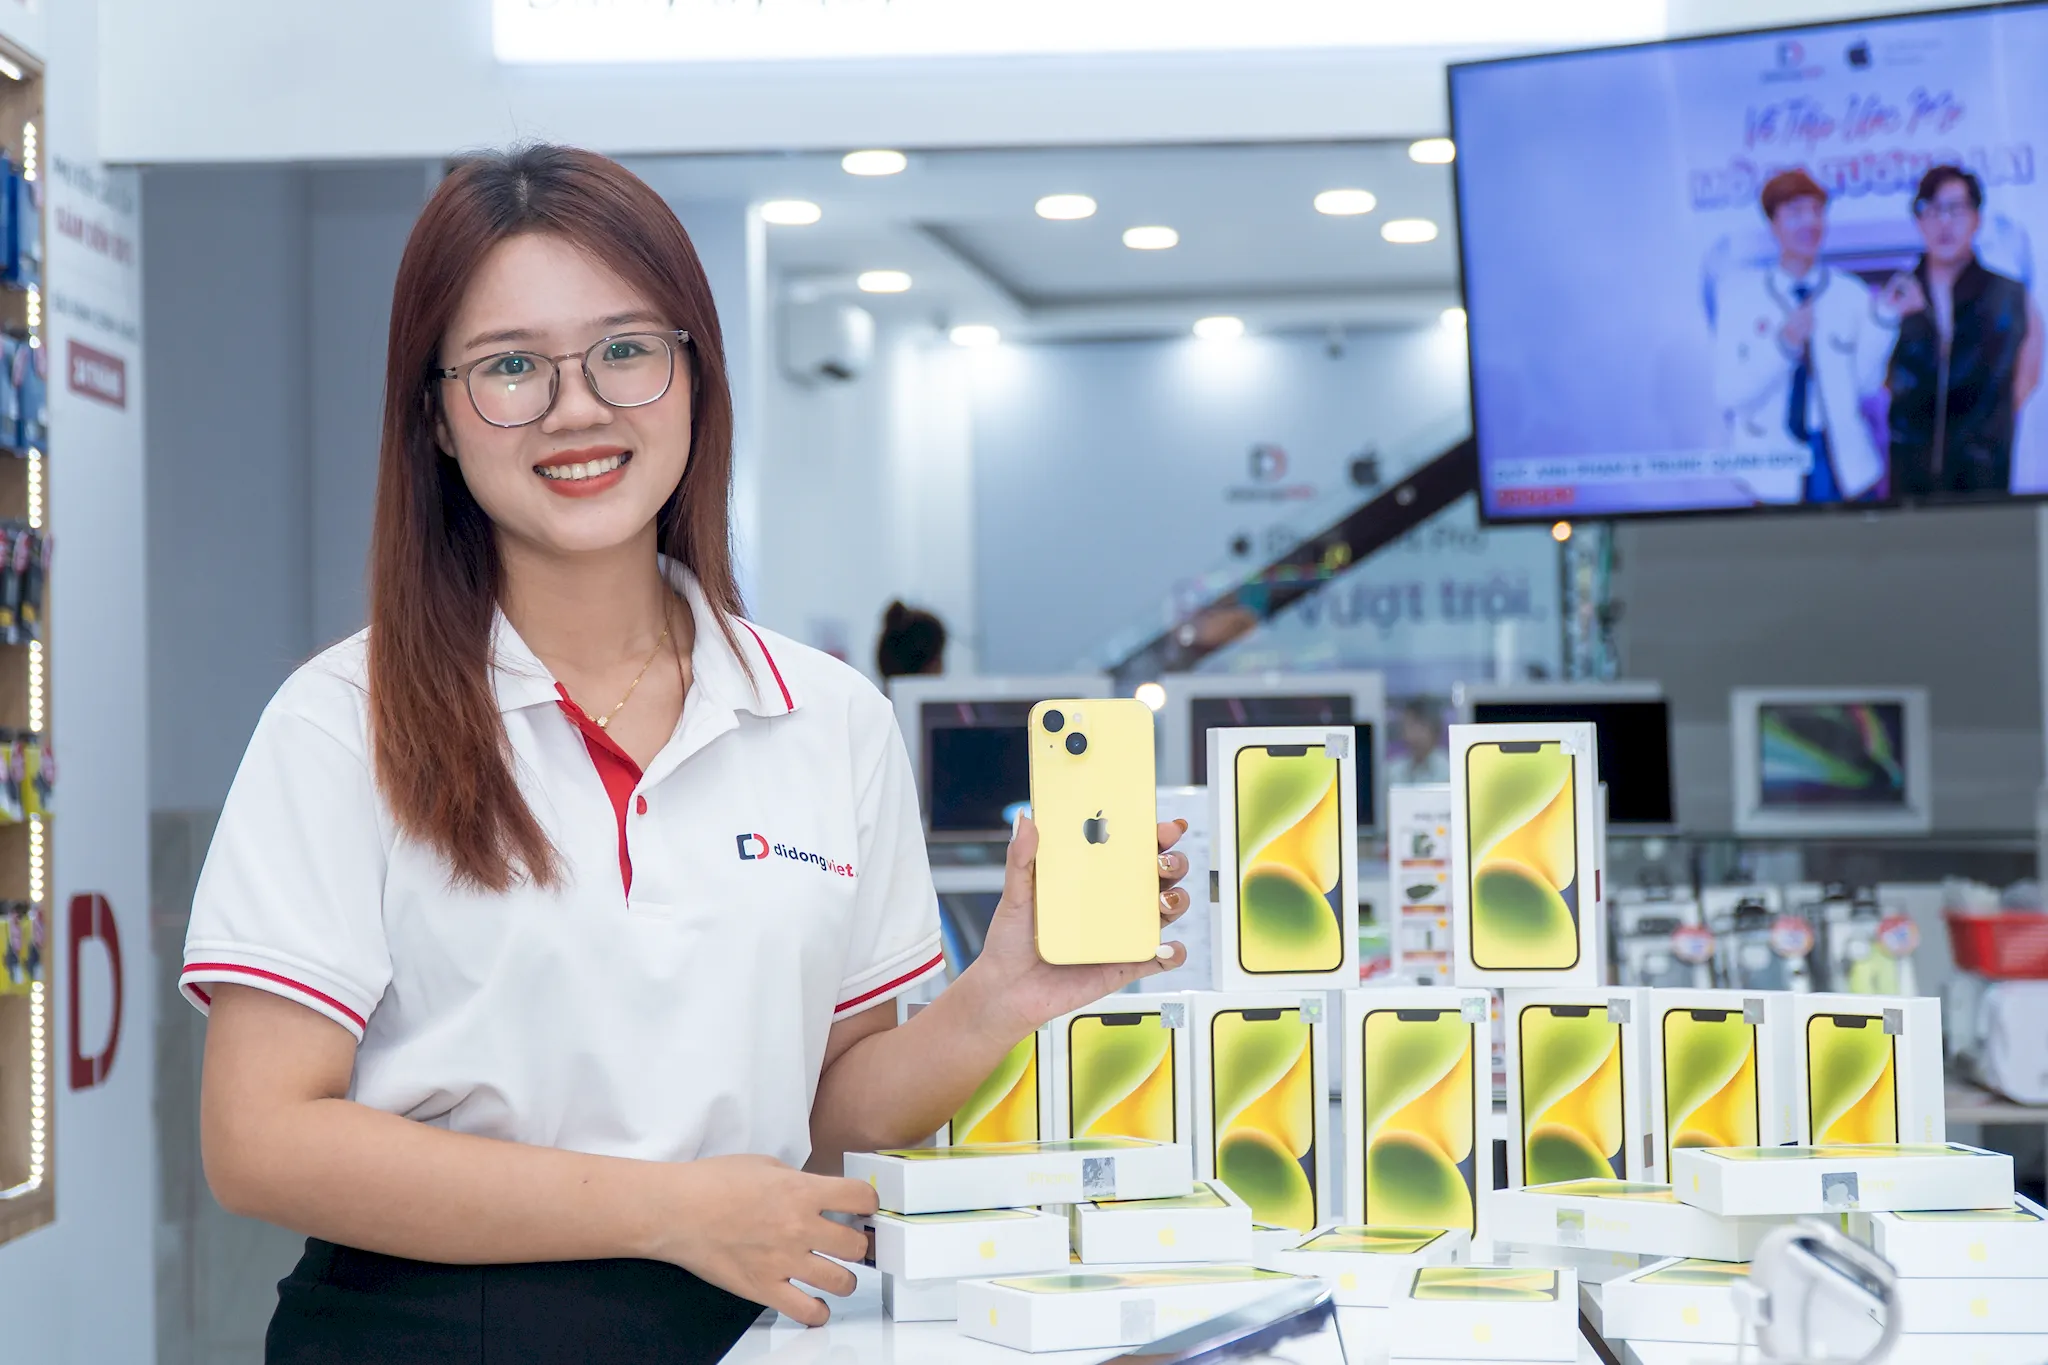 iPhone 14 màu vàng mới chính thức lên kệ tại Việt Nam, giá cuối chỉ từ 18.69 triệu đồng